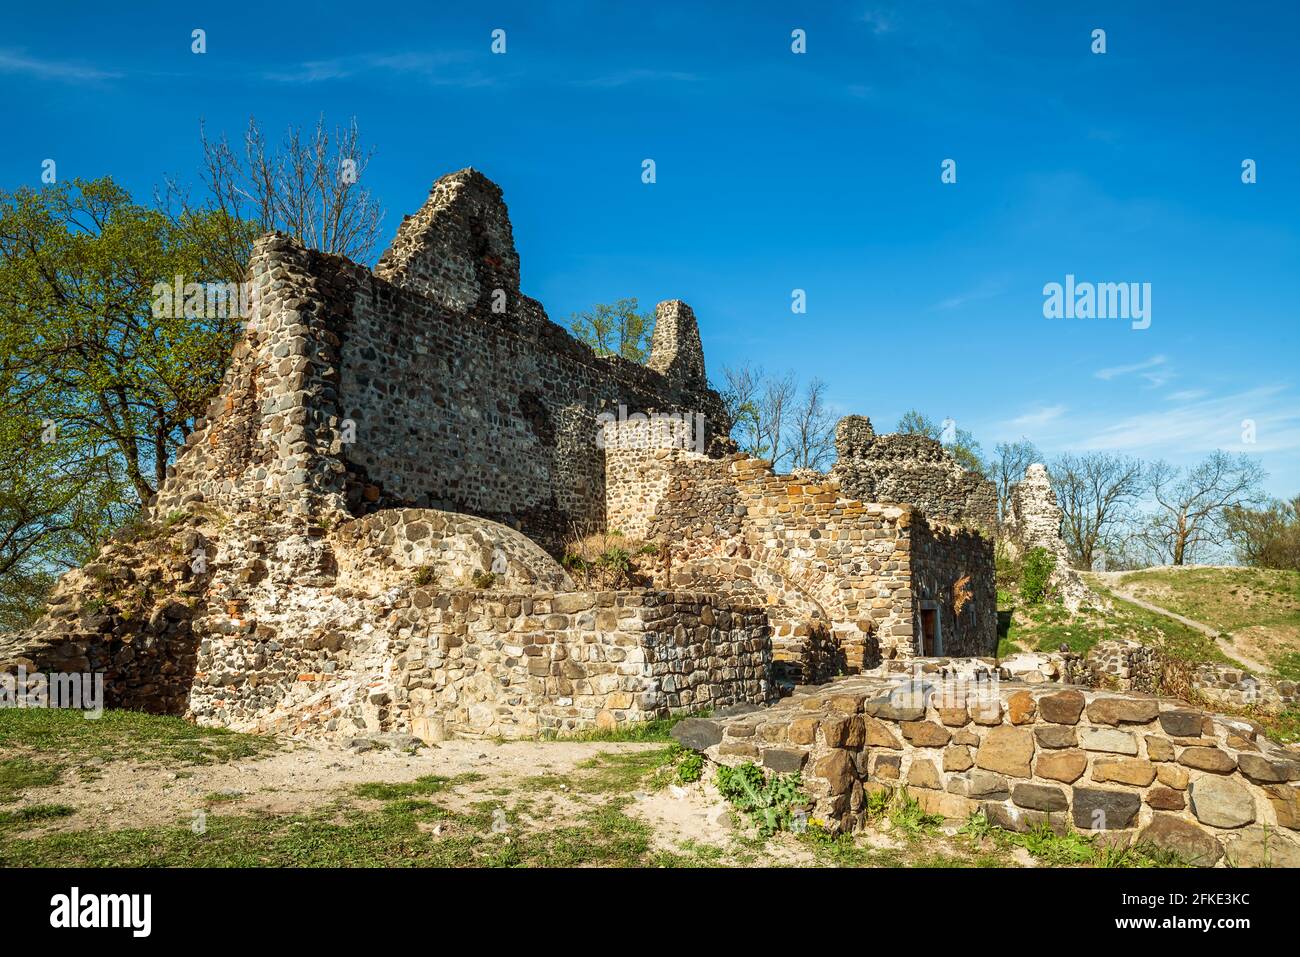 Fort von Tatika Ruinen in ungarn in der Nähe des plattensees in zala Grafschaft. Mittelalterliche Burg aus dem 13. Jahrhundert. Erbaut 13. Zerstört im 16. Jahrhundert Stockfoto